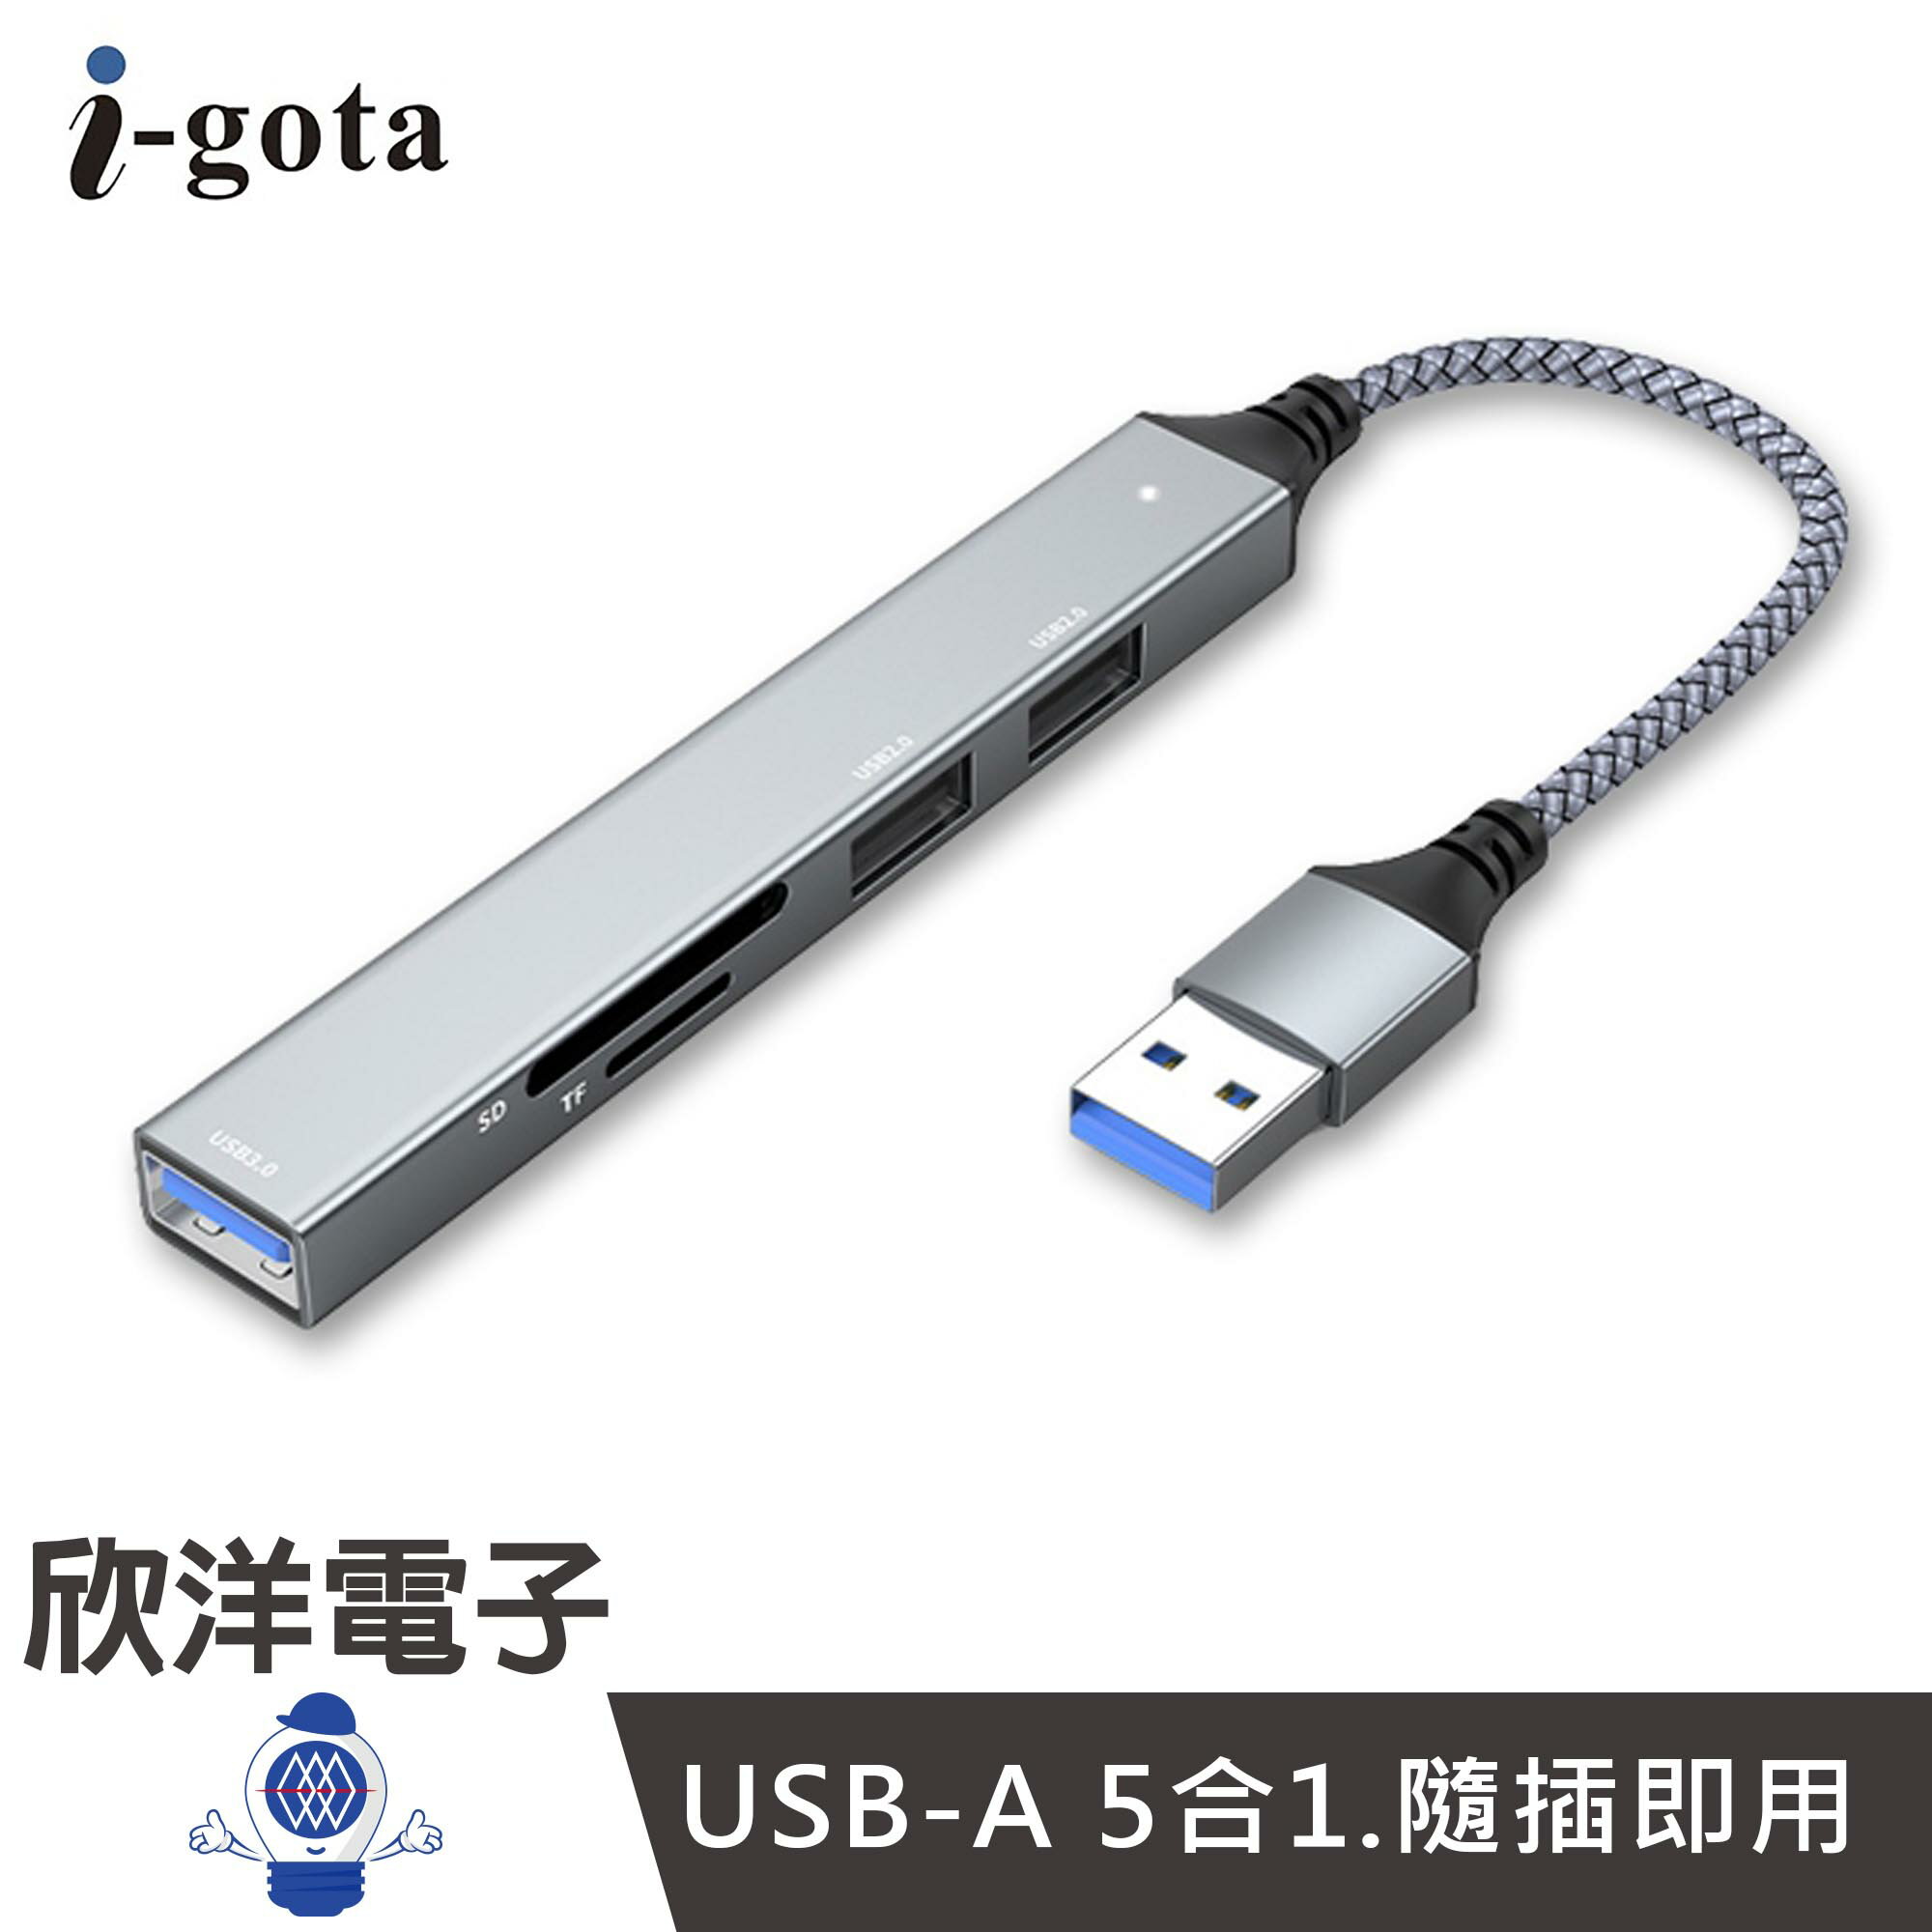 ※ 欣洋電子 ※ i-gota USB-A 5合1 極速擴展埠 USB3.1 HUB集線器 (GHB-005) 適用讀卡機 鍵盤 滑鼠 隨身碟 外接硬碟